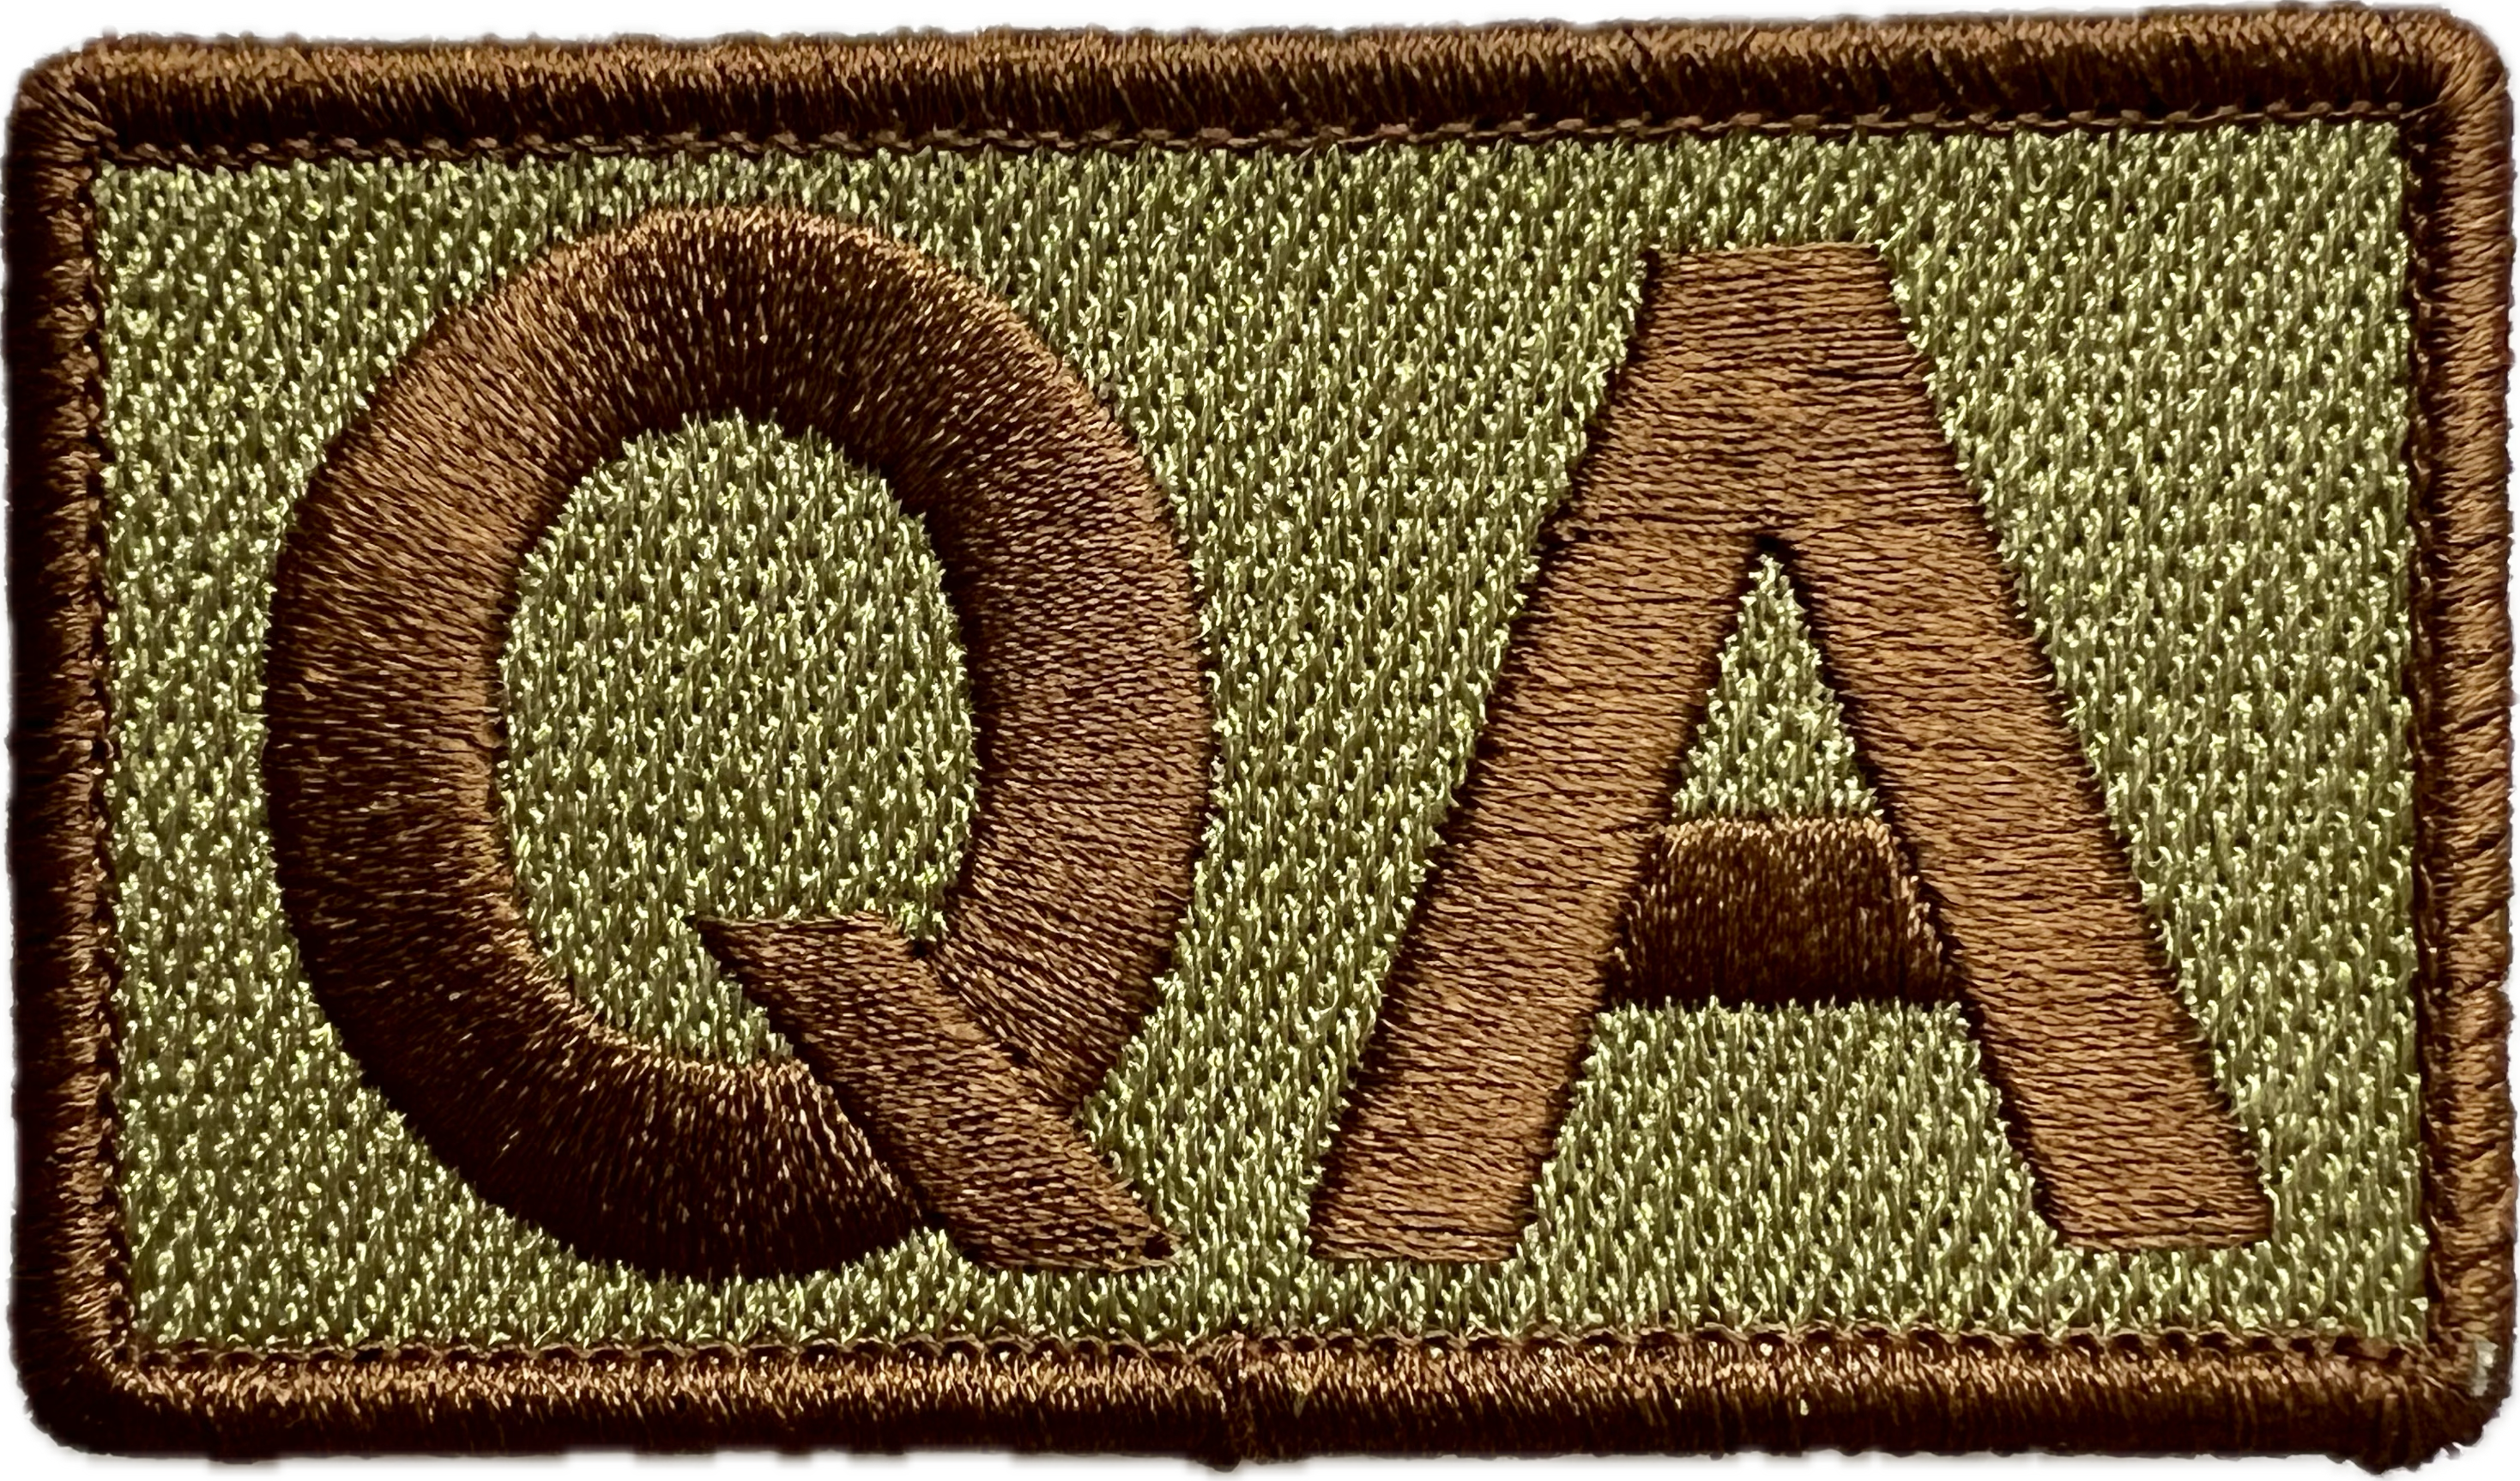 QA - Duty Identifier Patch